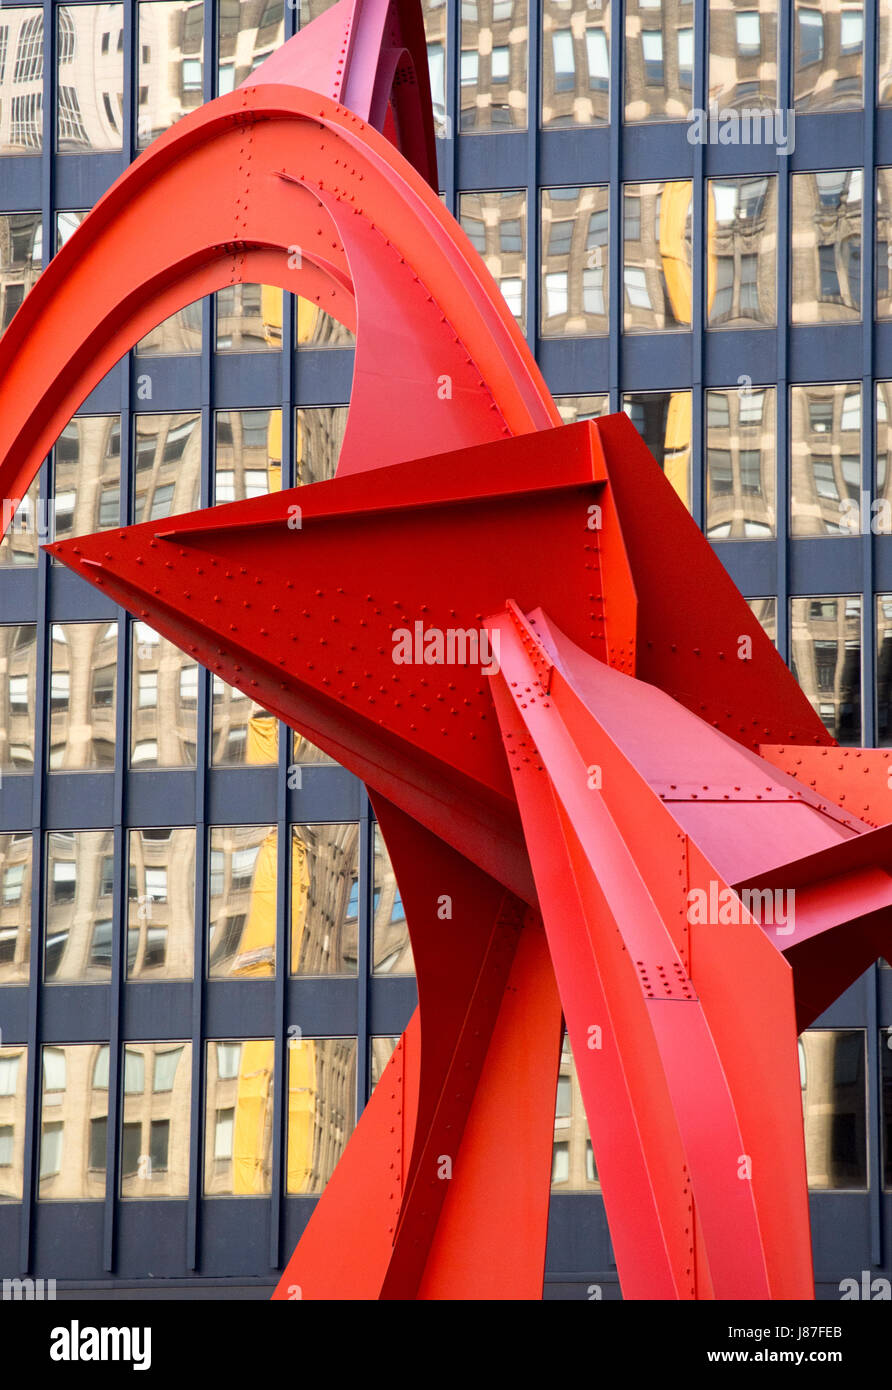 'Flamingo flamingo rouge, créé par l'artiste américain Alexander Calder, est un 53 pieds (16 m) de hauteur stabile situé dans la Plaza en face de Banque D'Images